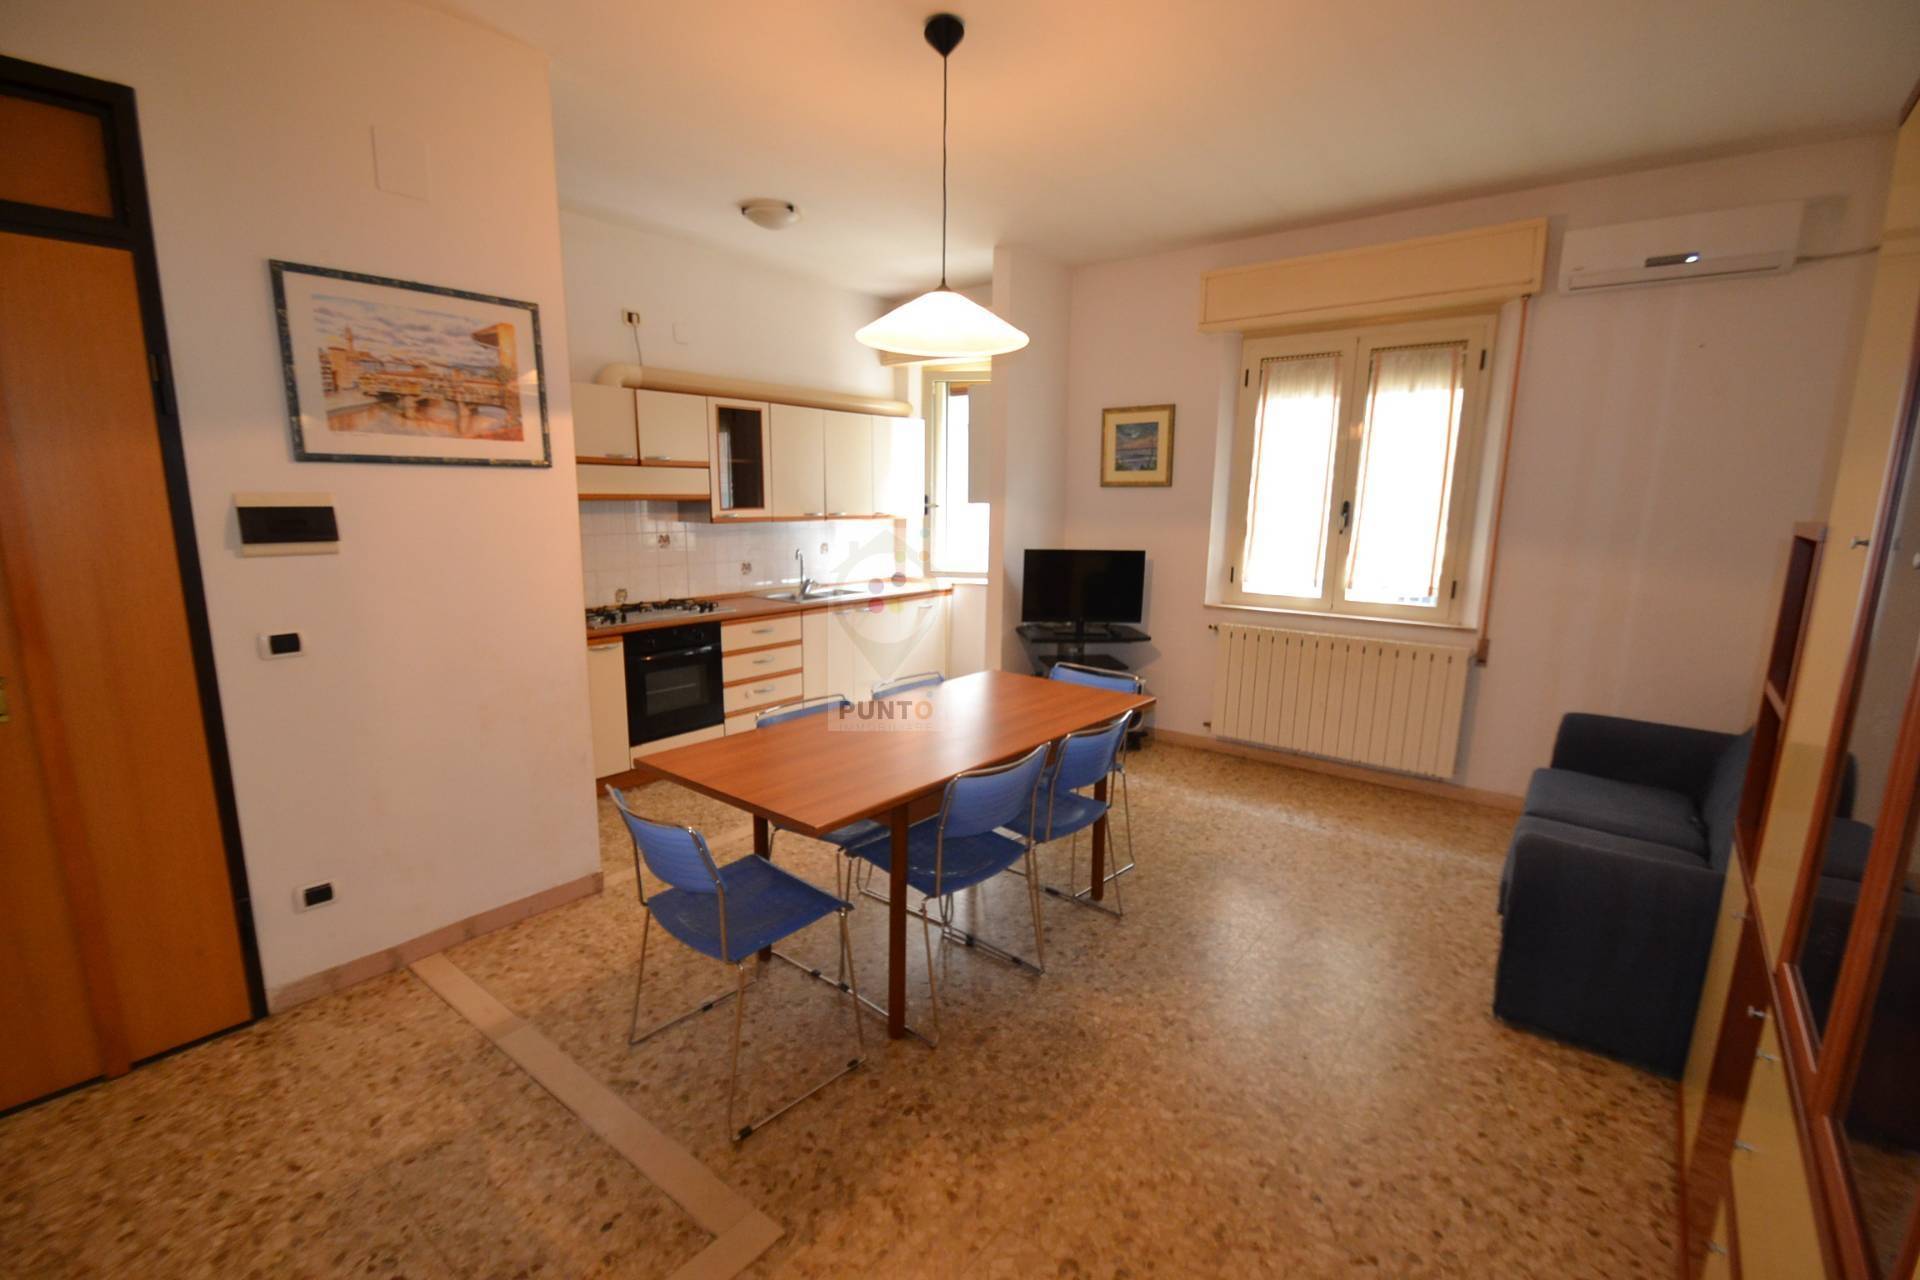 Casa vacanza 5 Locali o pi? in affitto, San Benedetto del Tronto porto d'ascoli